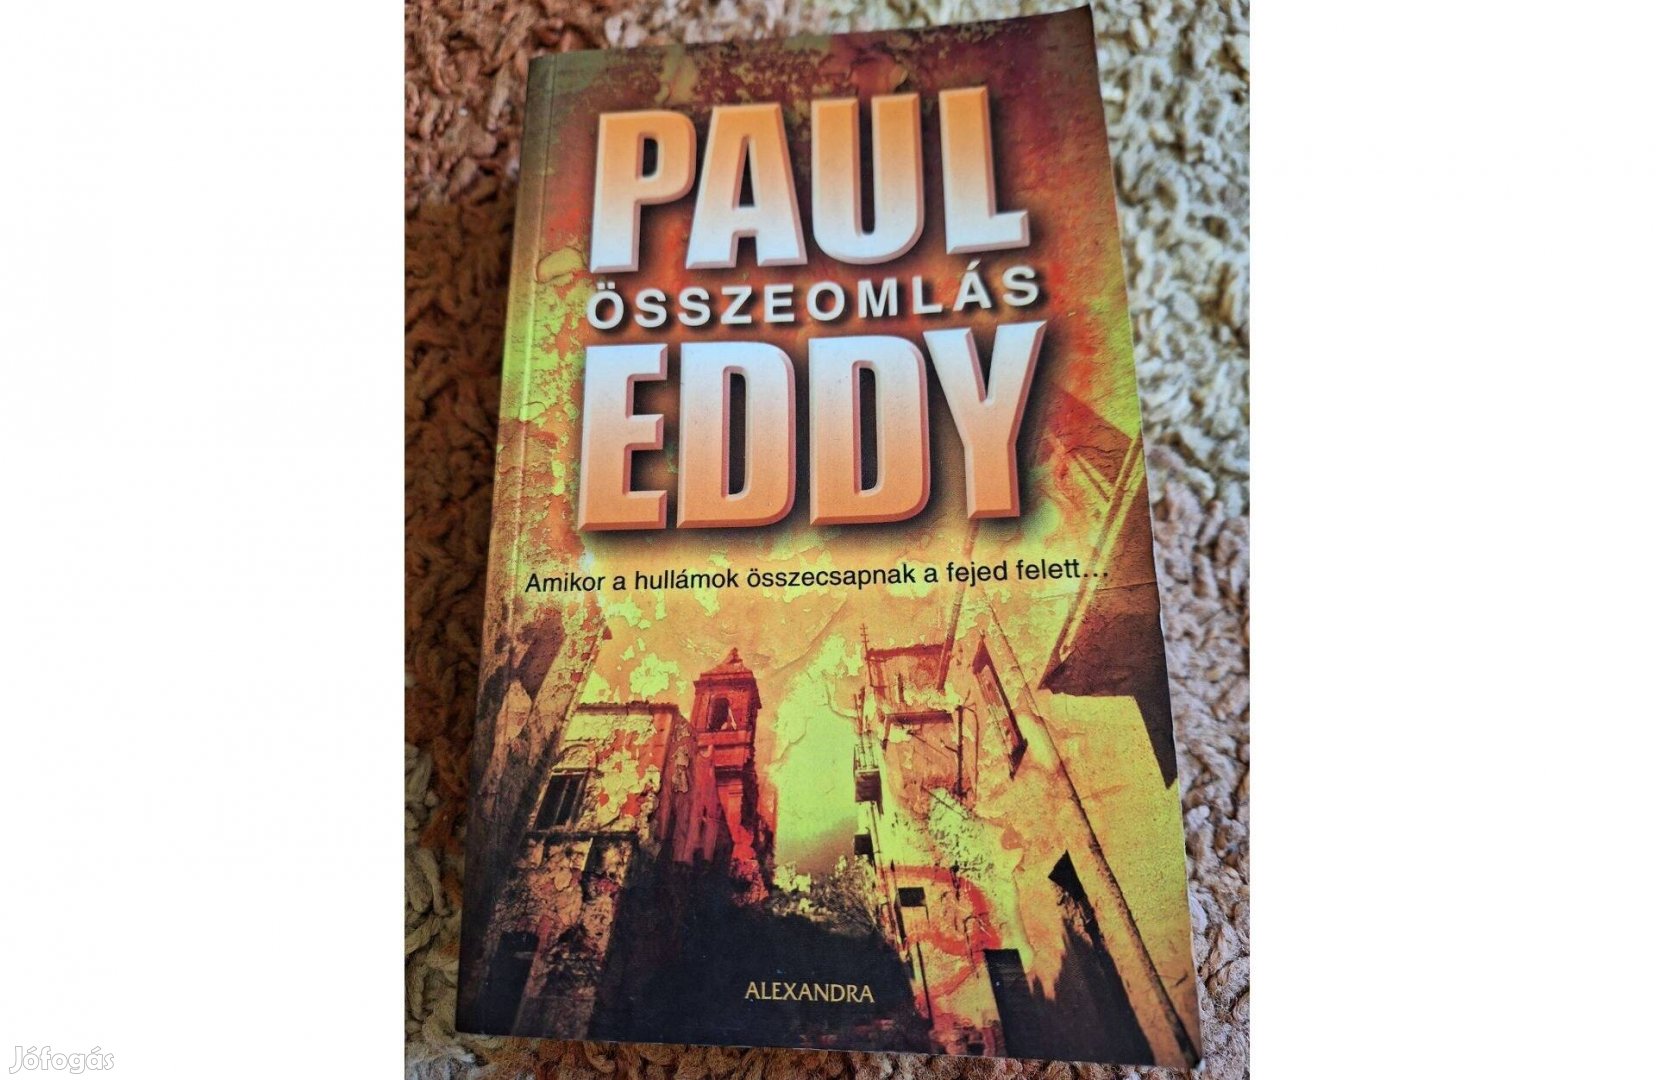 Paul Eddy - Összeomlás